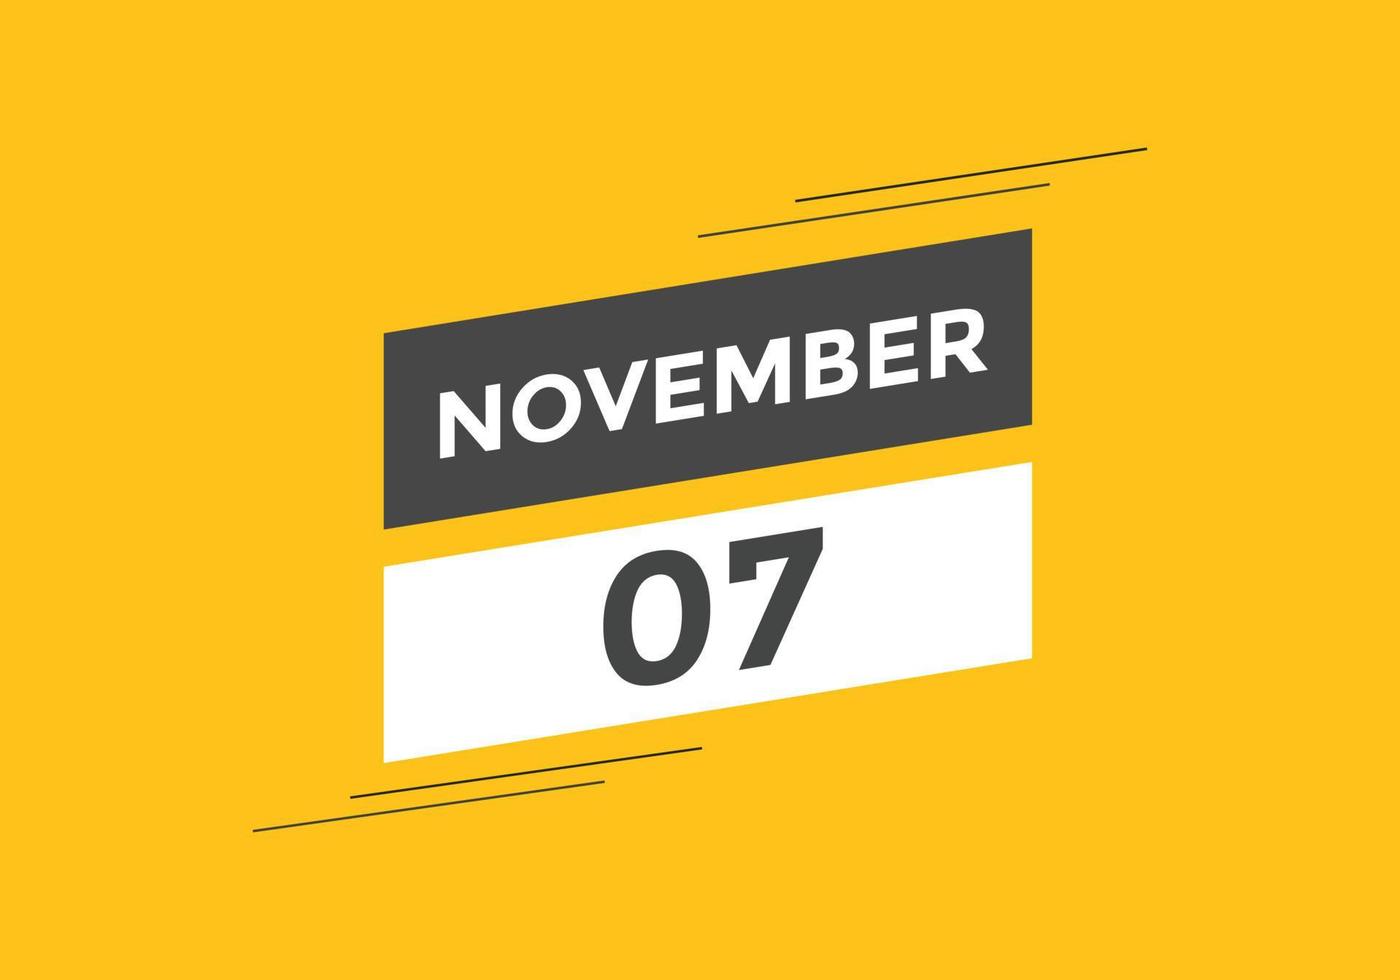 rappel du calendrier du 7 novembre. Modèle d'icône de calendrier quotidien du 7 novembre. modèle de conception d'icône calendrier 7 novembre. illustration vectorielle vecteur